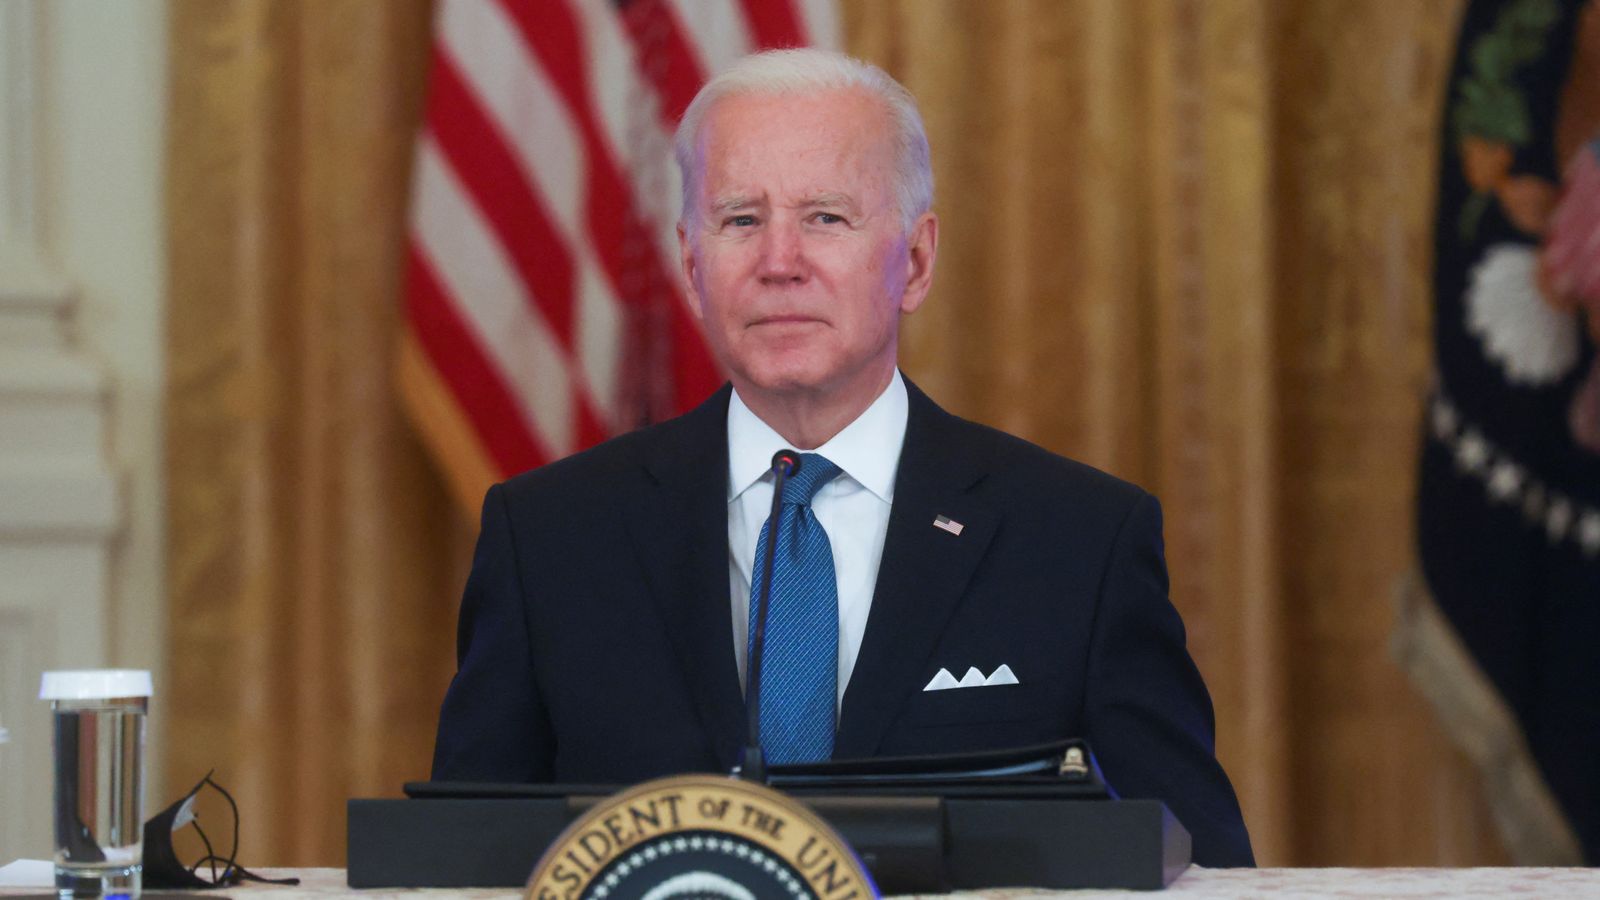 Il presidente degli Stati Uniti Joe Biden è stato sorpreso a chiamare il giornalista “stupido figlio di puttana” in conferenza stampa |  Notizie dagli Stati Uniti